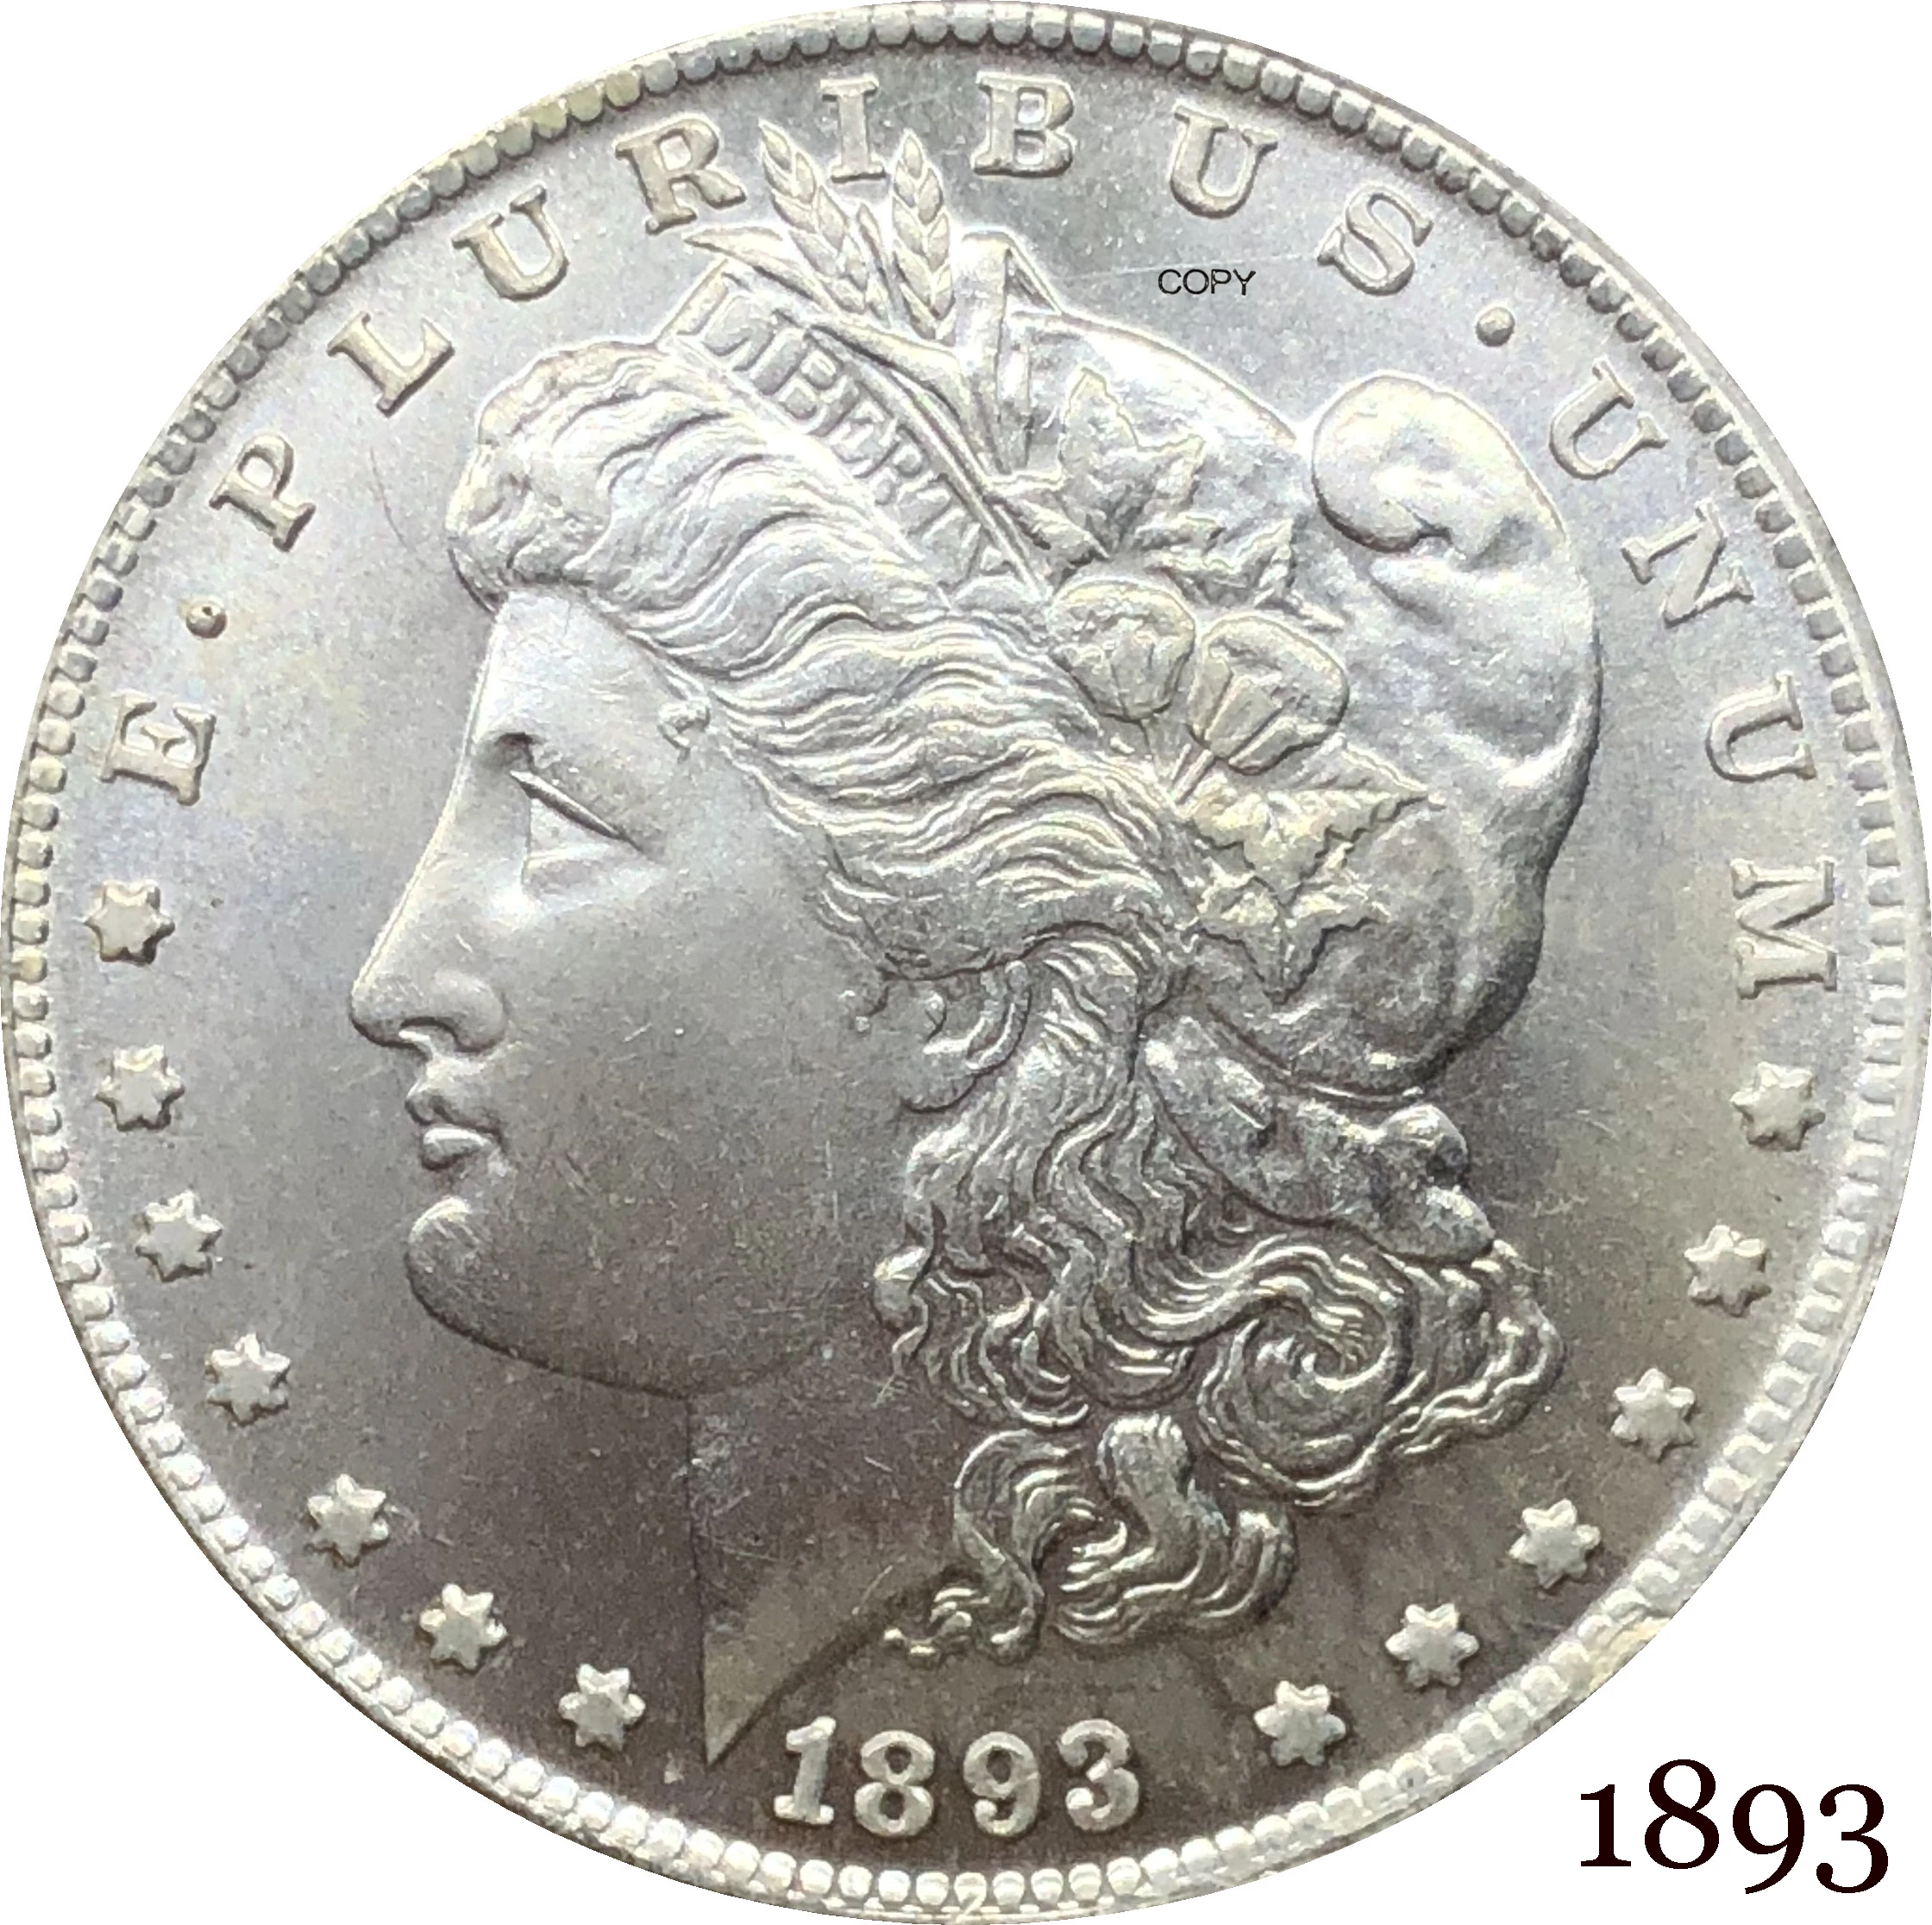 

Соединенные Штаты Америки 1893 Морган один доллар США Монета свобода мельница Посеребренная в Бог мы доверяем копия монеты